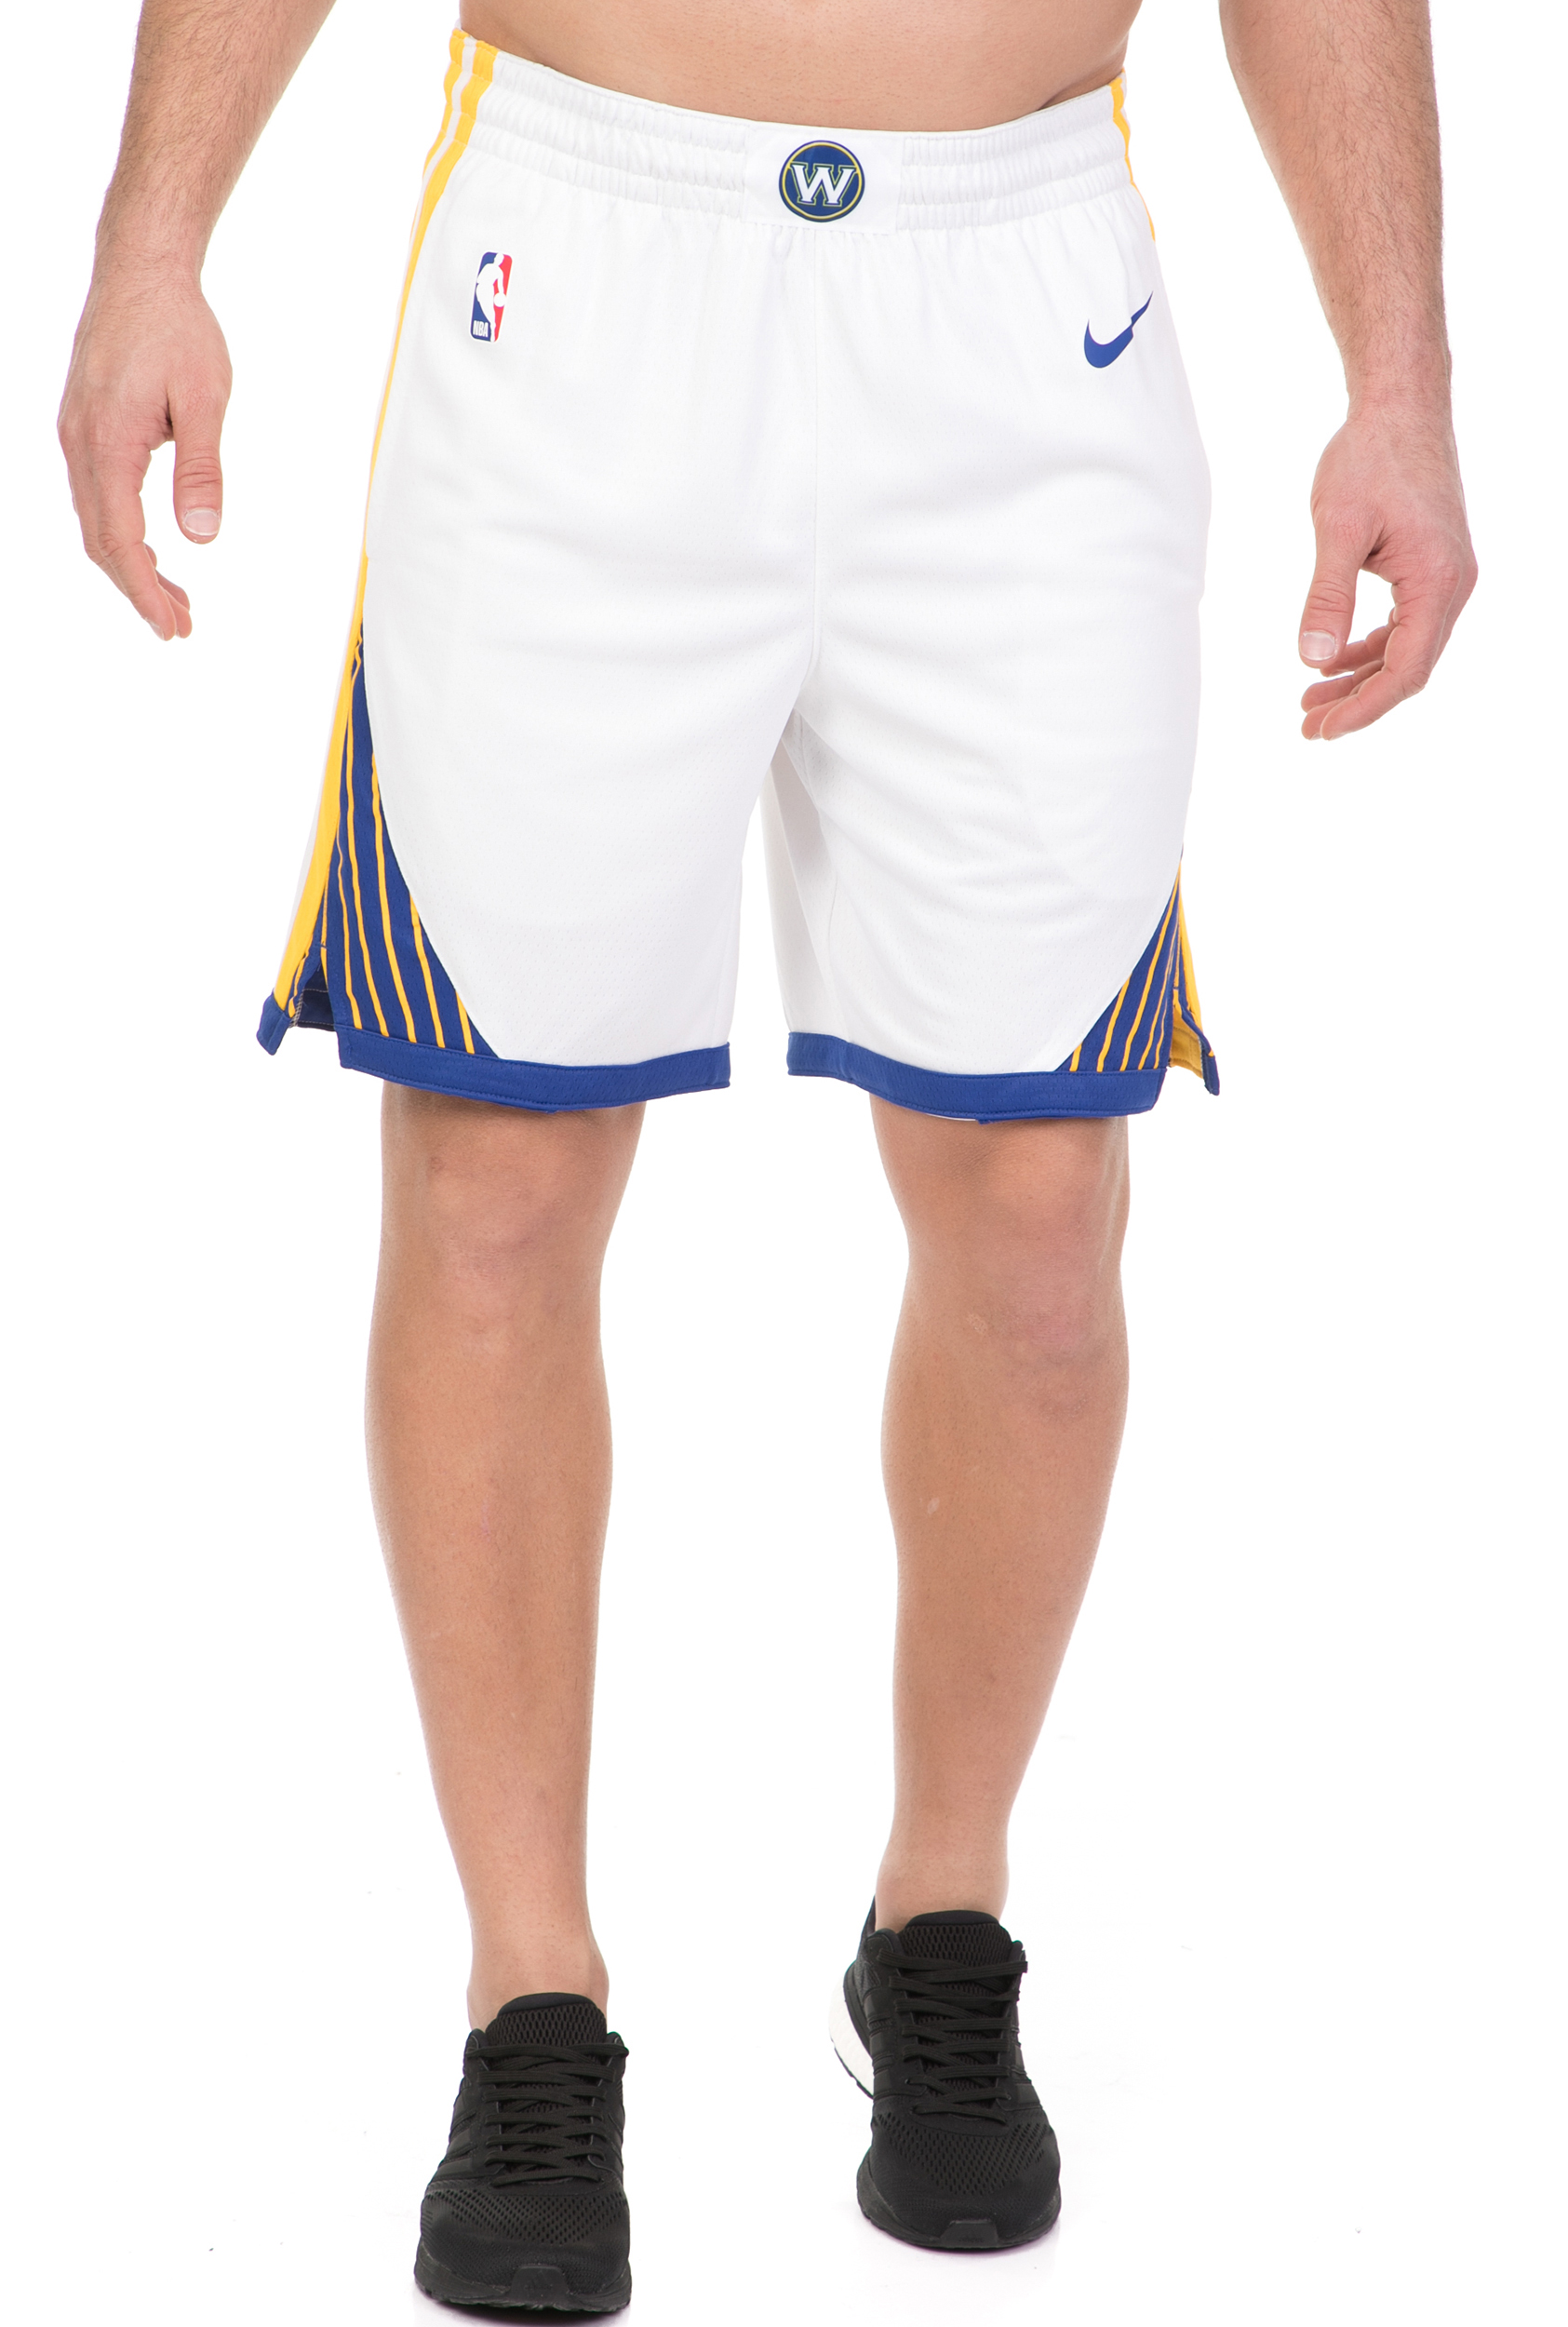 Ανδρικά/Ρούχα/Σορτς-Βερμούδες/Αθλητικά NIKE - Ανδρικό σορτς Nike NBA Golden State Warriors Association Edition Swingman λευκό